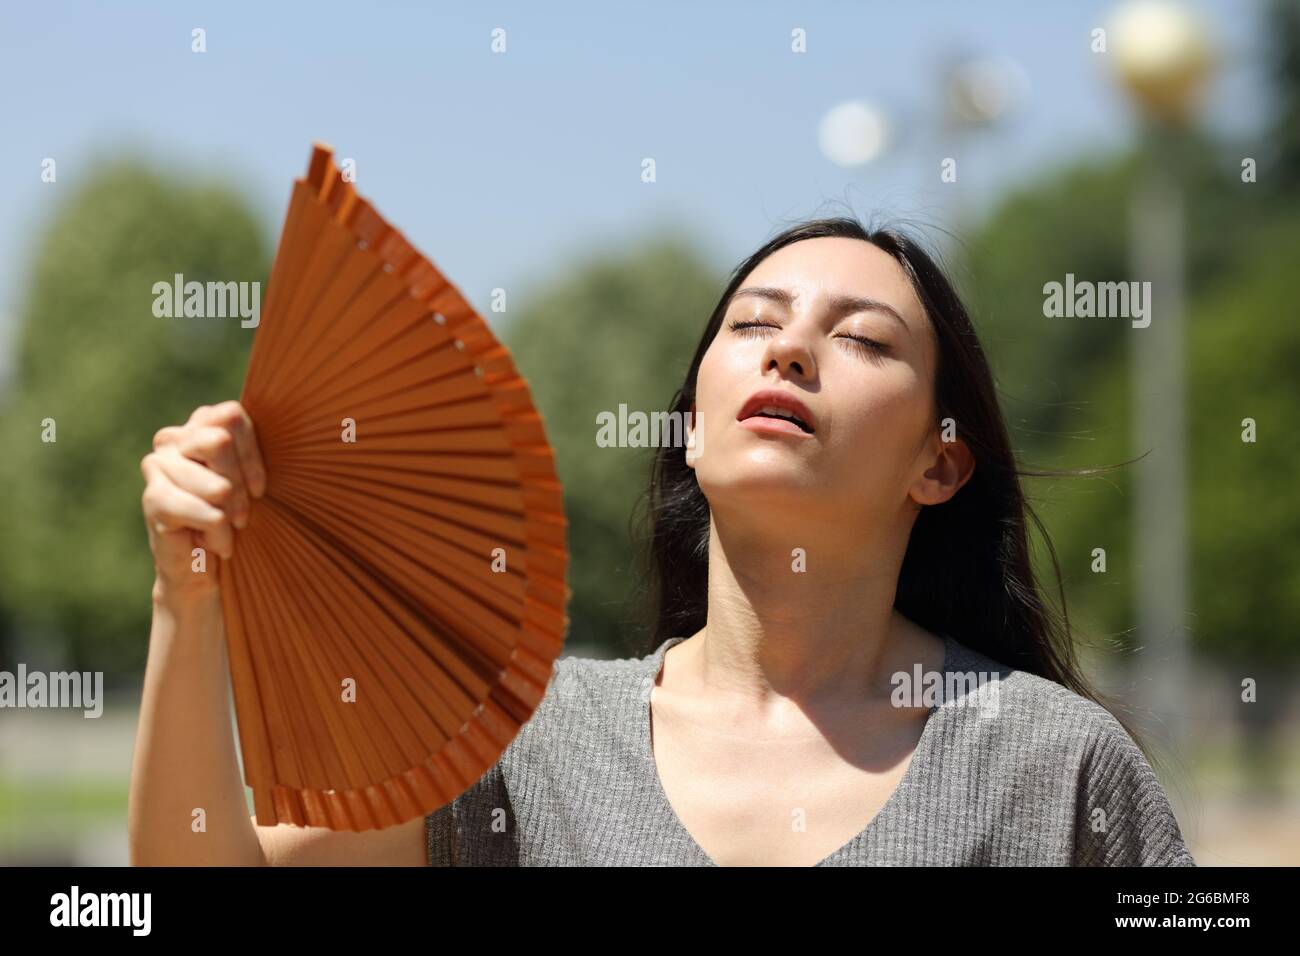 Femme asiatique stressée qui souffrait d'un coup de chaleur dans la rue par une chaude journée d'été Banque D'Images